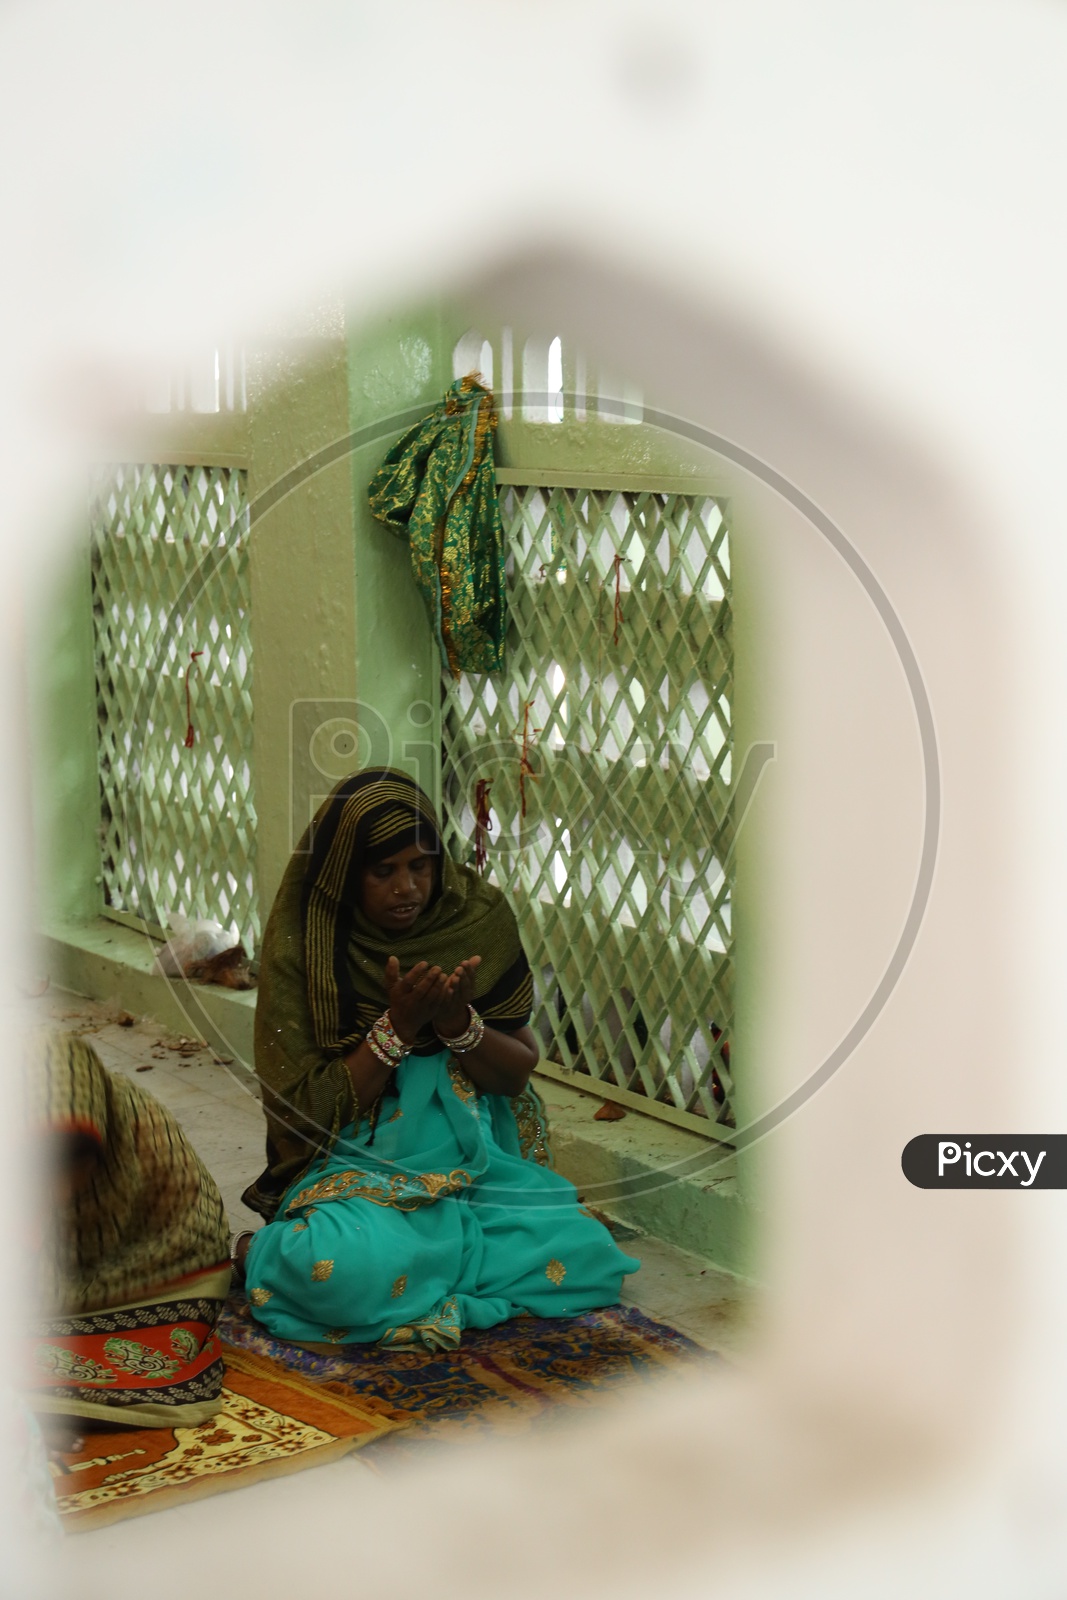 So emotionally lady praying at Jahangir Peer Dargah